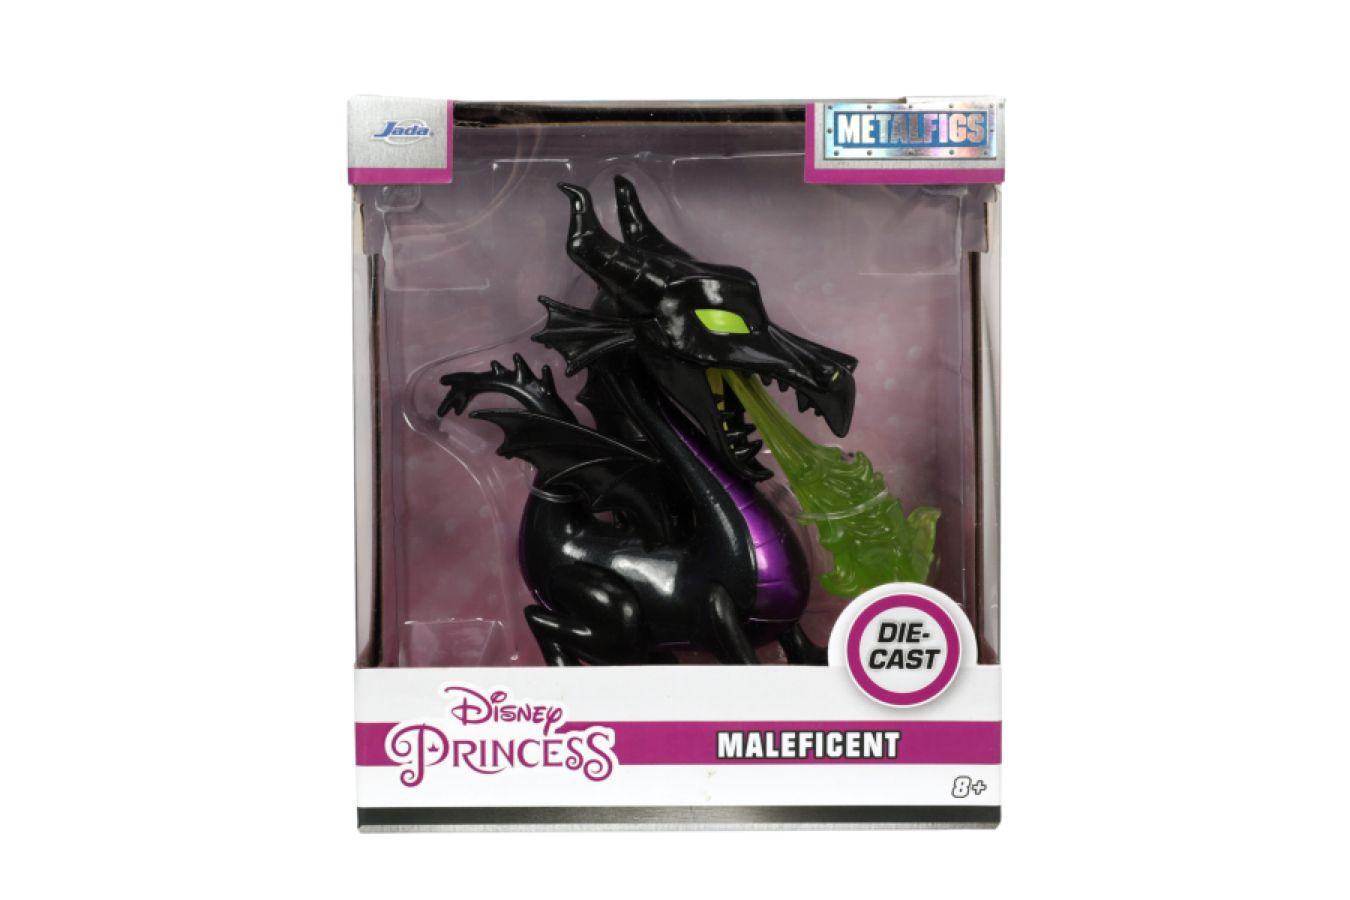 Sleeping Beauty - Maleficent Dragon 4" MetalFig